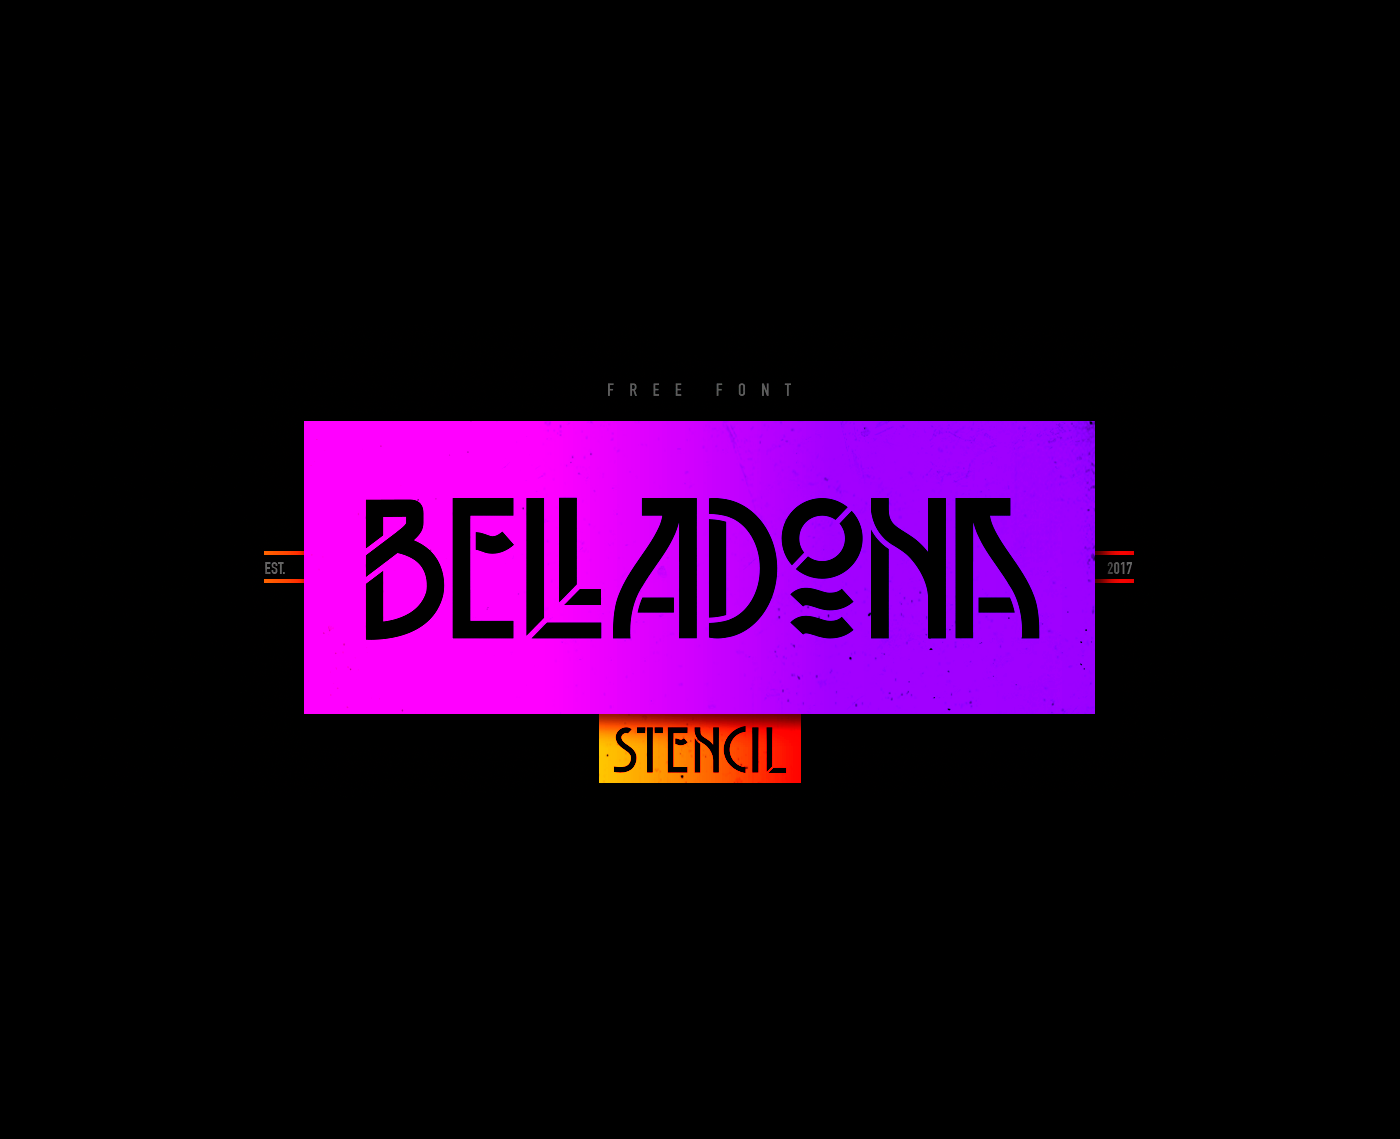 Ejemplo de fuente Belladona Stencil Regular